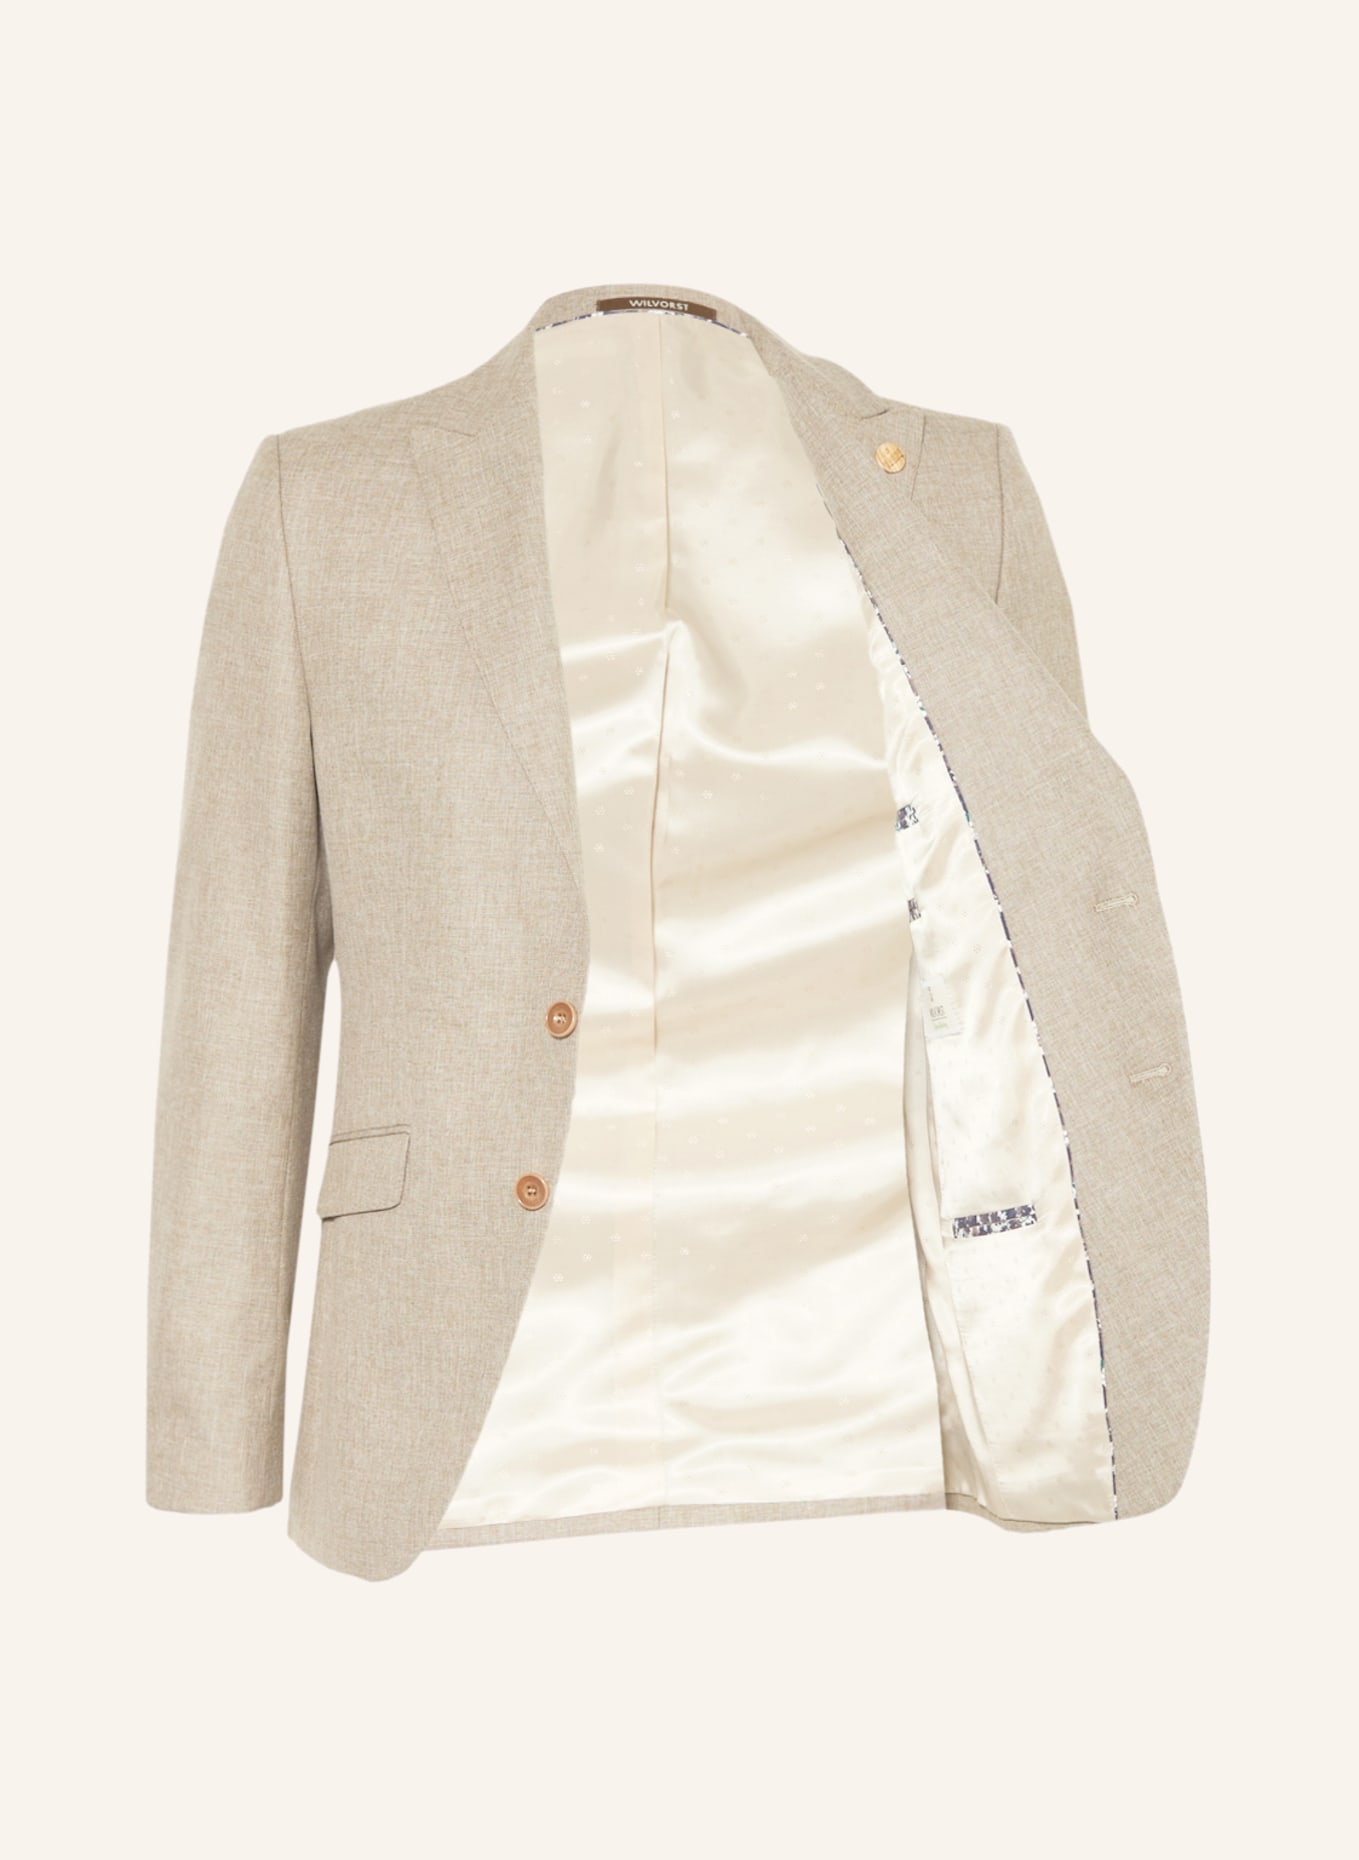 WILVORST Suit jacket extra slim fit, Color: BEIGE (Image 5)